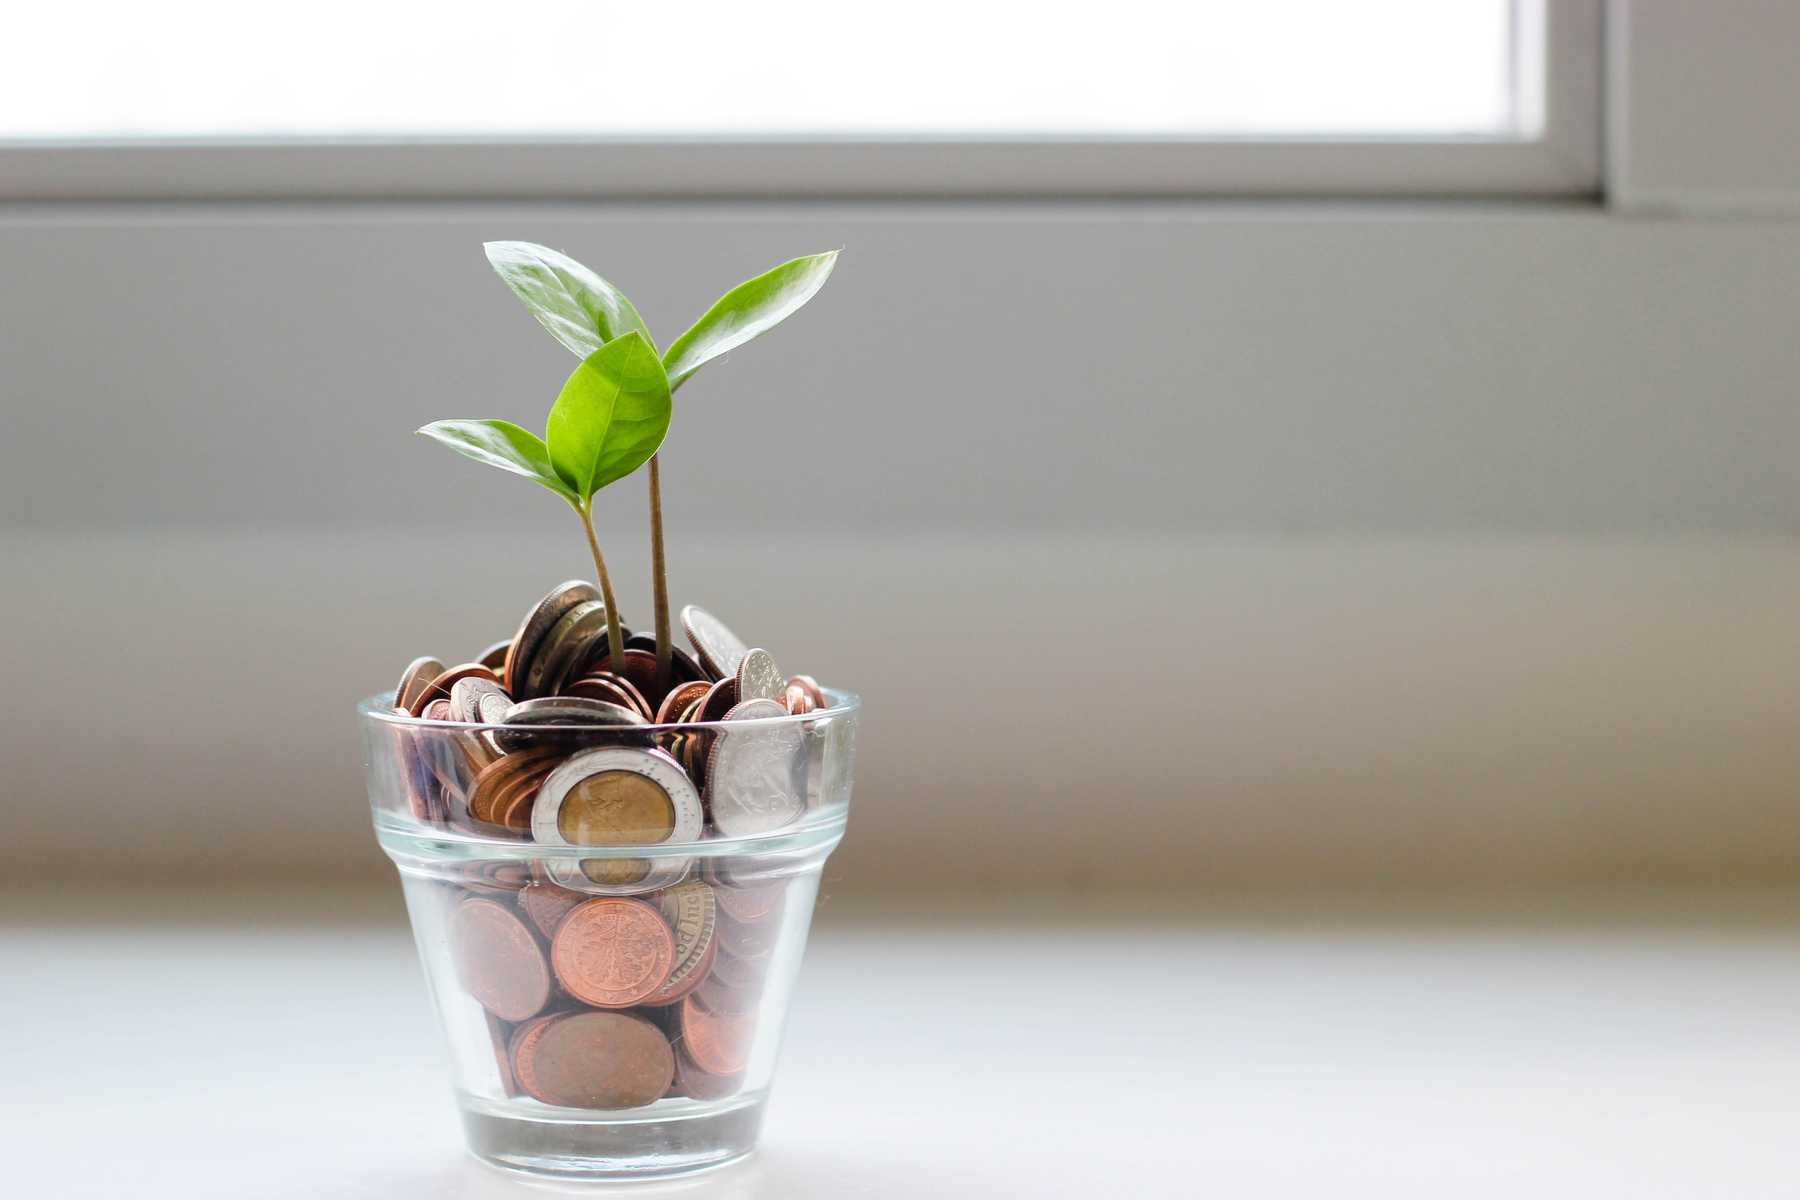 Befektetett pénz olyan mint a növény: idővel egyre nagyobbra nő.